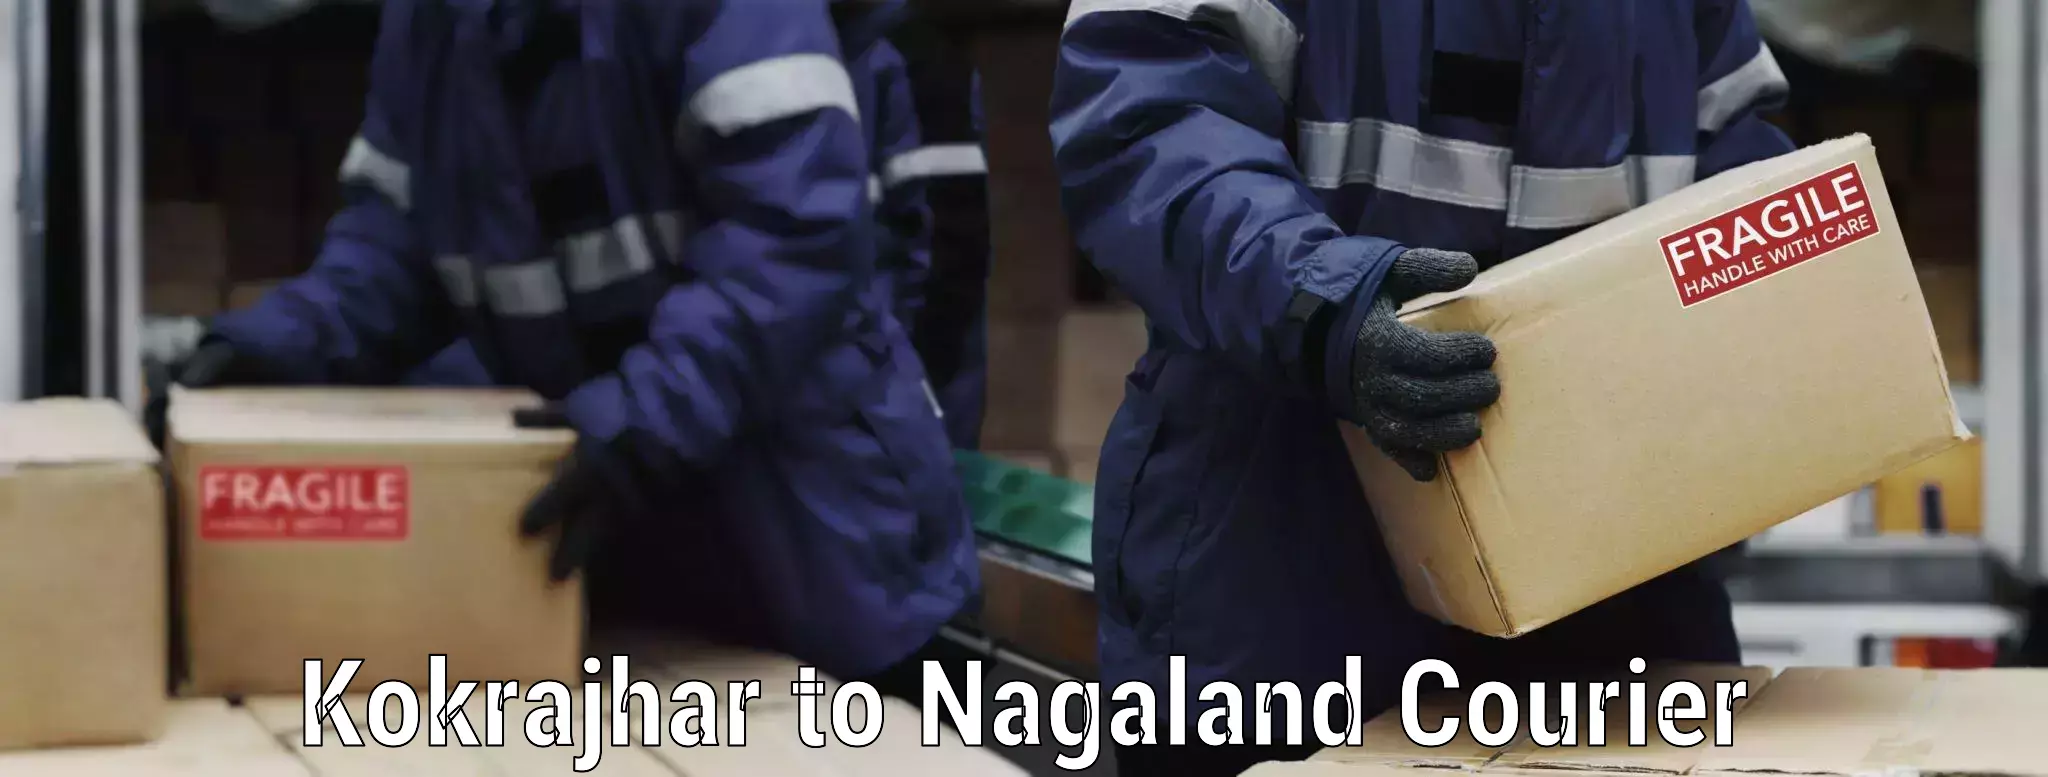 Household goods transporters Kokrajhar to Nagaland